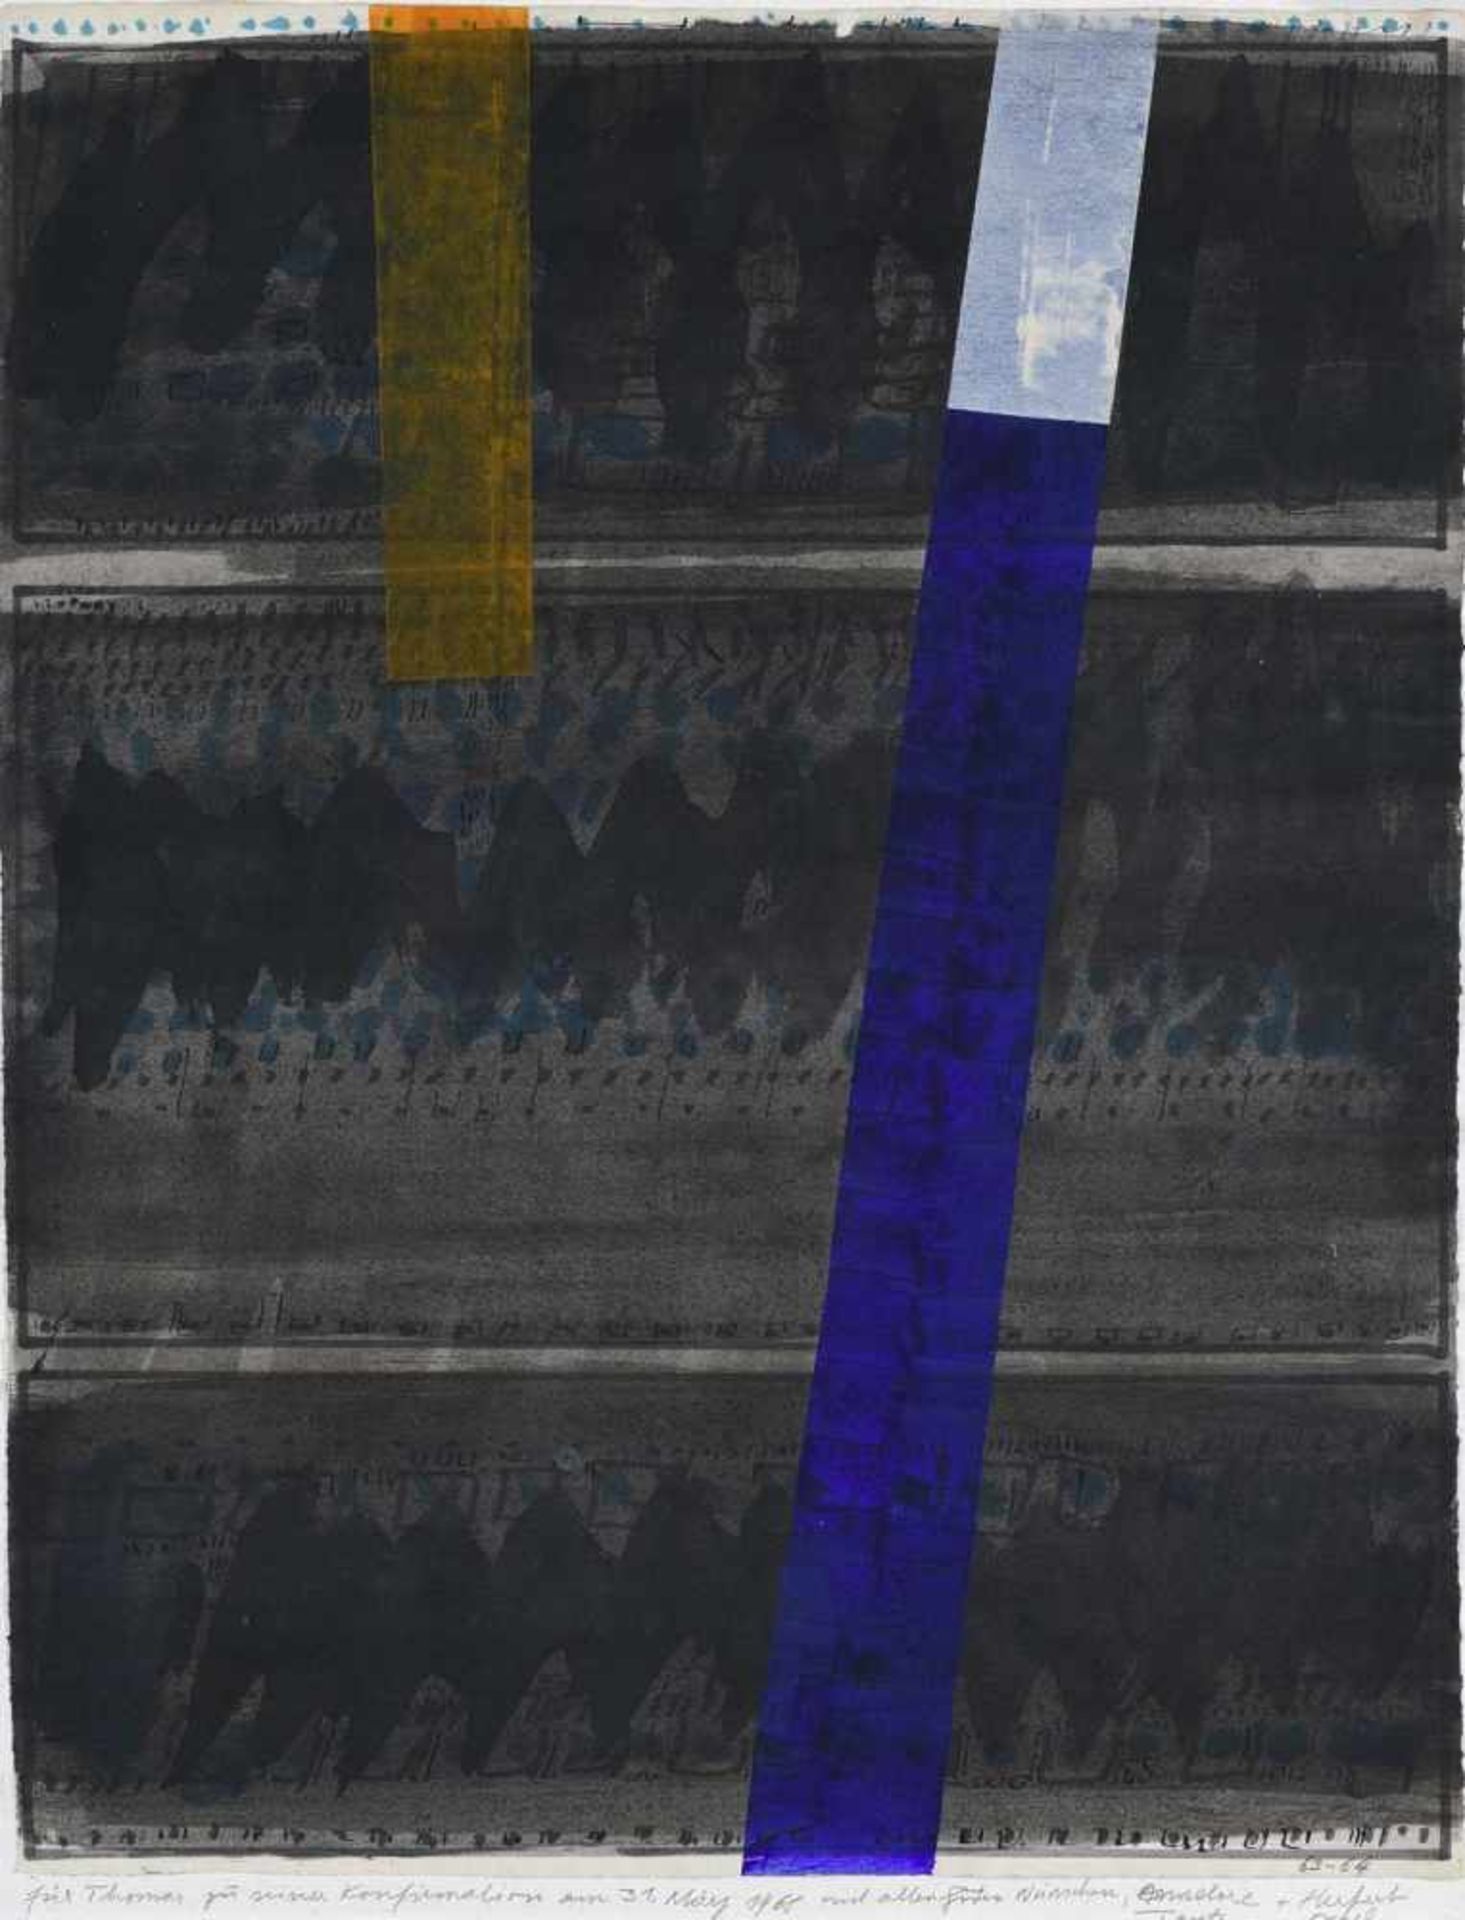 Hajek, Otto HerbertKaltenbach, 1927 - Stuttgart, 200562 x 48 cm,R.Ohne Titel, 1963/1964. Tusche